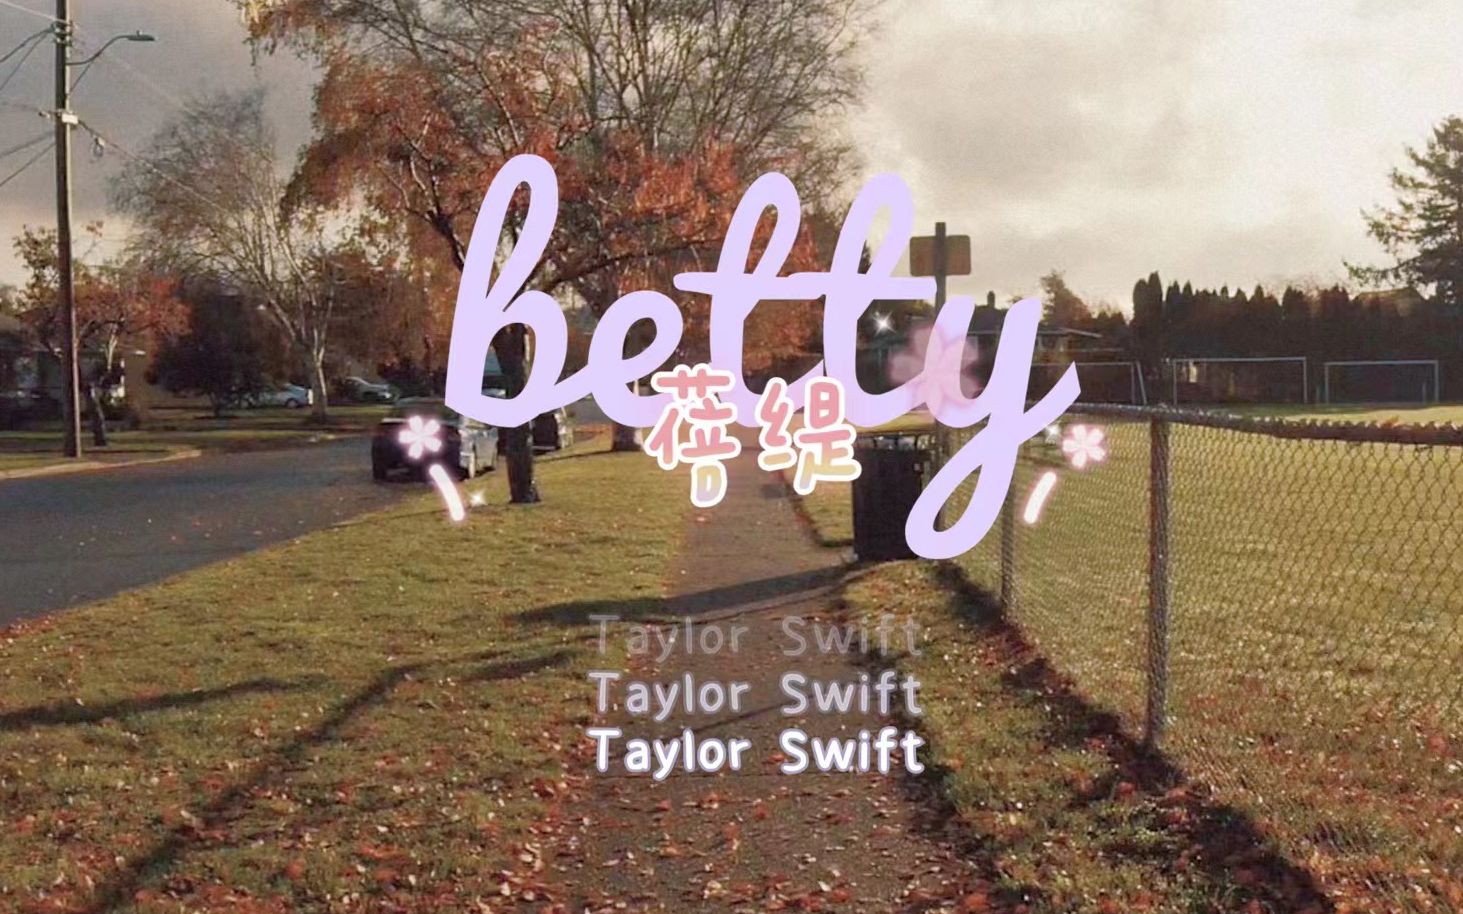 【𝑓𝑜𝑙𝑘𝑙𝑜𝑟𝑒】betty - Taylor Swift 歌词版MV 特效中字 民俗里村味最浓的歌 三角恋故事终篇